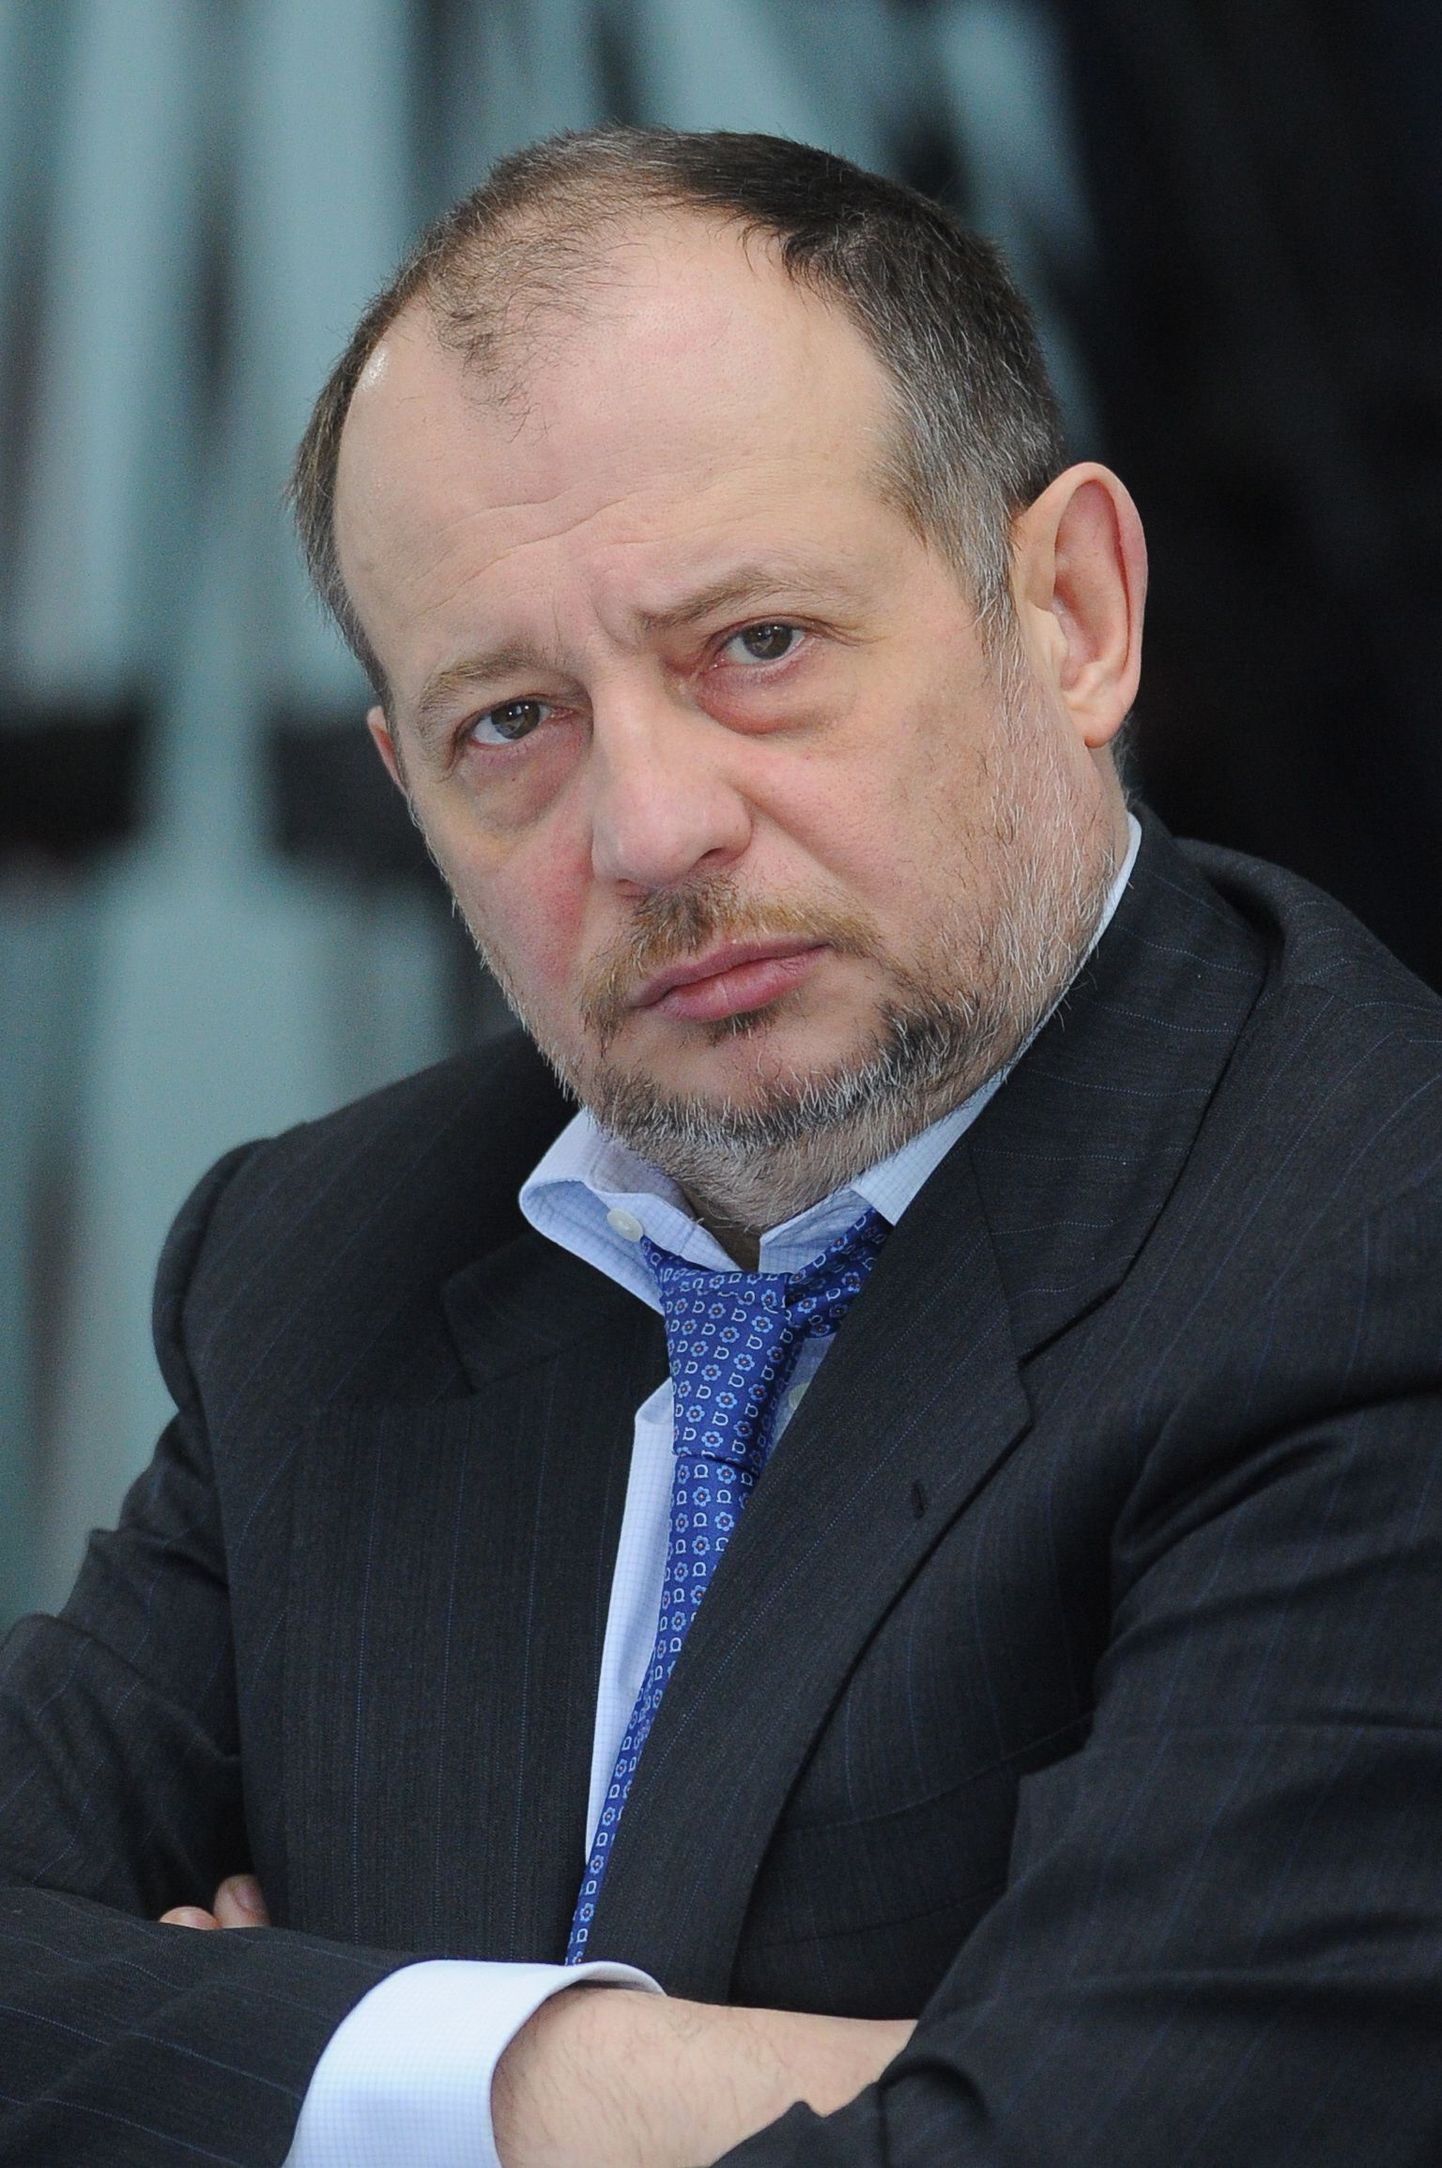 NLMK Steeli nõukogu esimees Vladimir Lisin- uue Forbesi edetabeli järgi Venemaa rikkaim inimene.